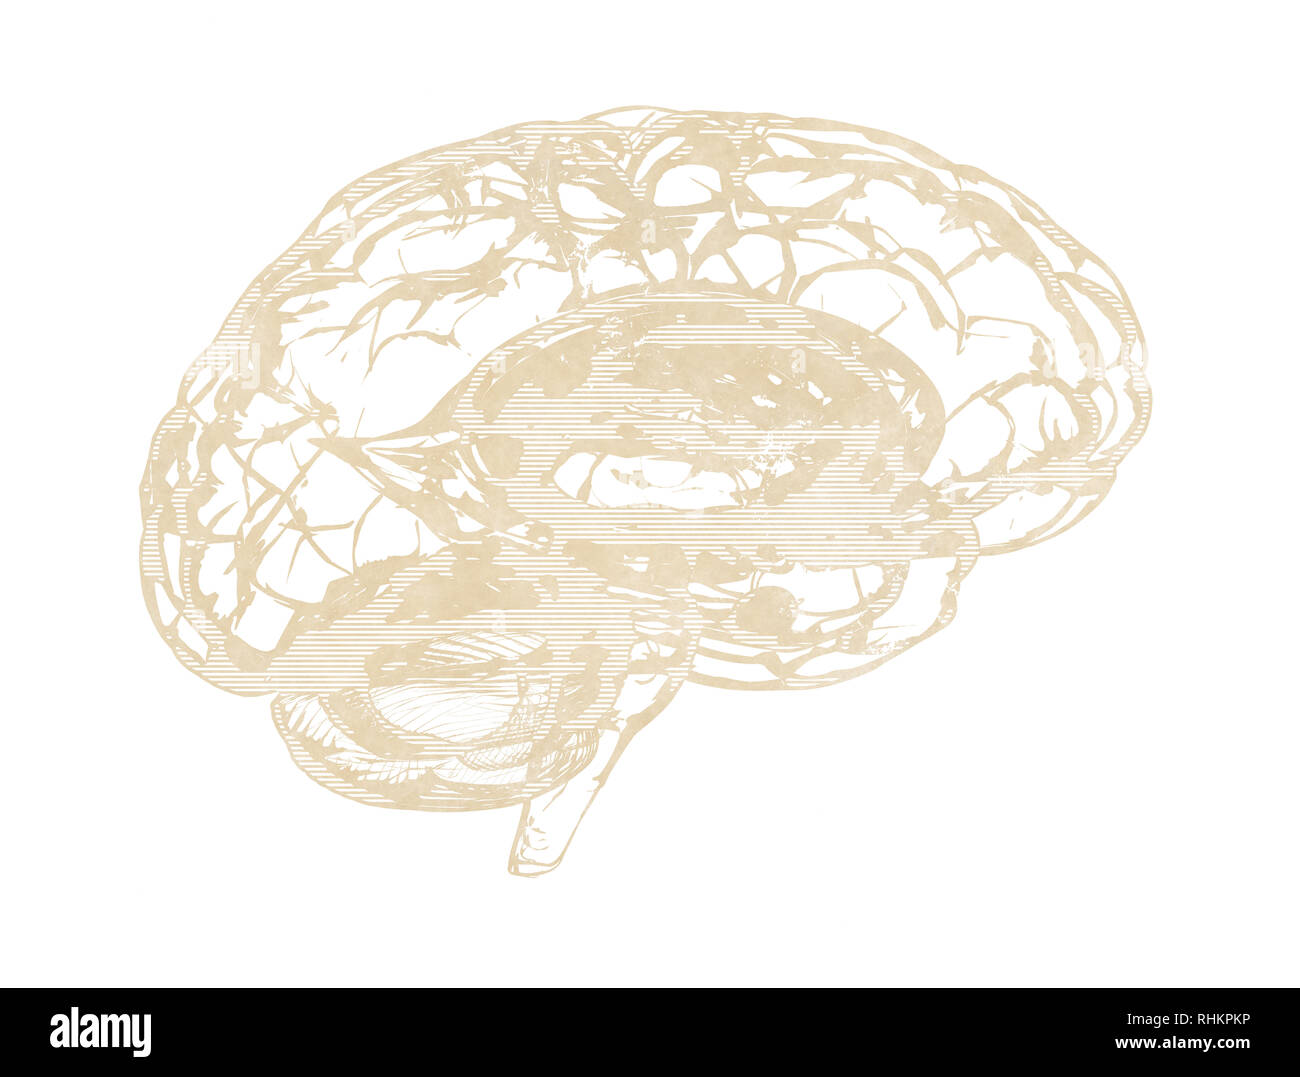 Menschliche Gehirn - Seitenansicht blau 3d Render isoliert auf weiss Stockfoto